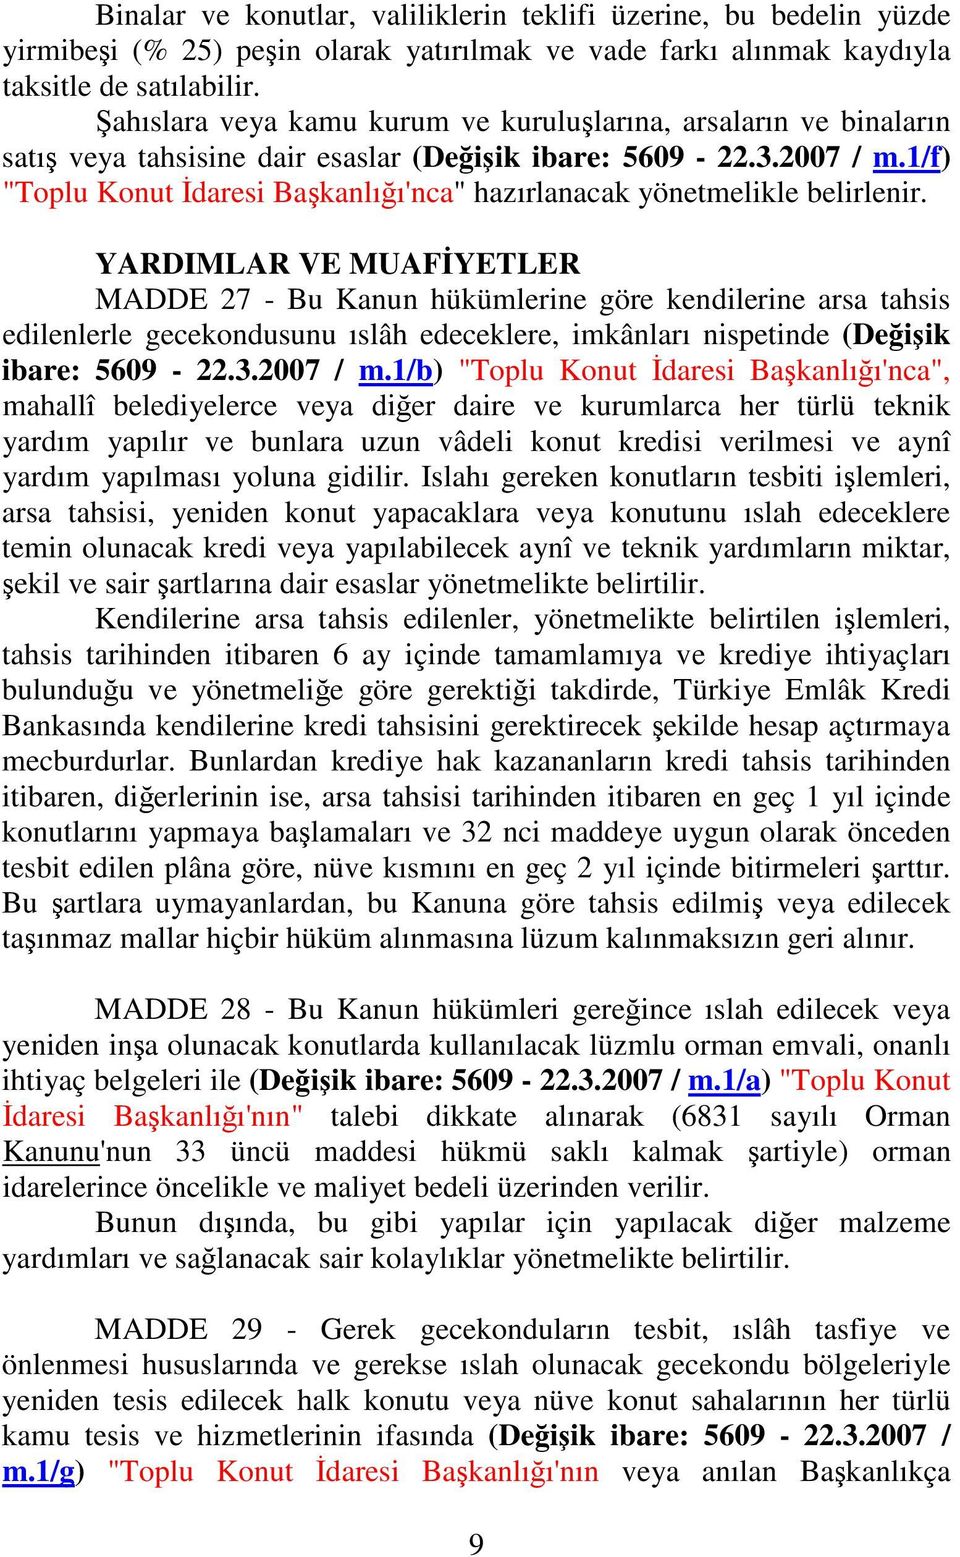 1/f) "Toplu Konut daresi Bakanlıı'nca" hazırlanacak yönetmelikle belirlenir.